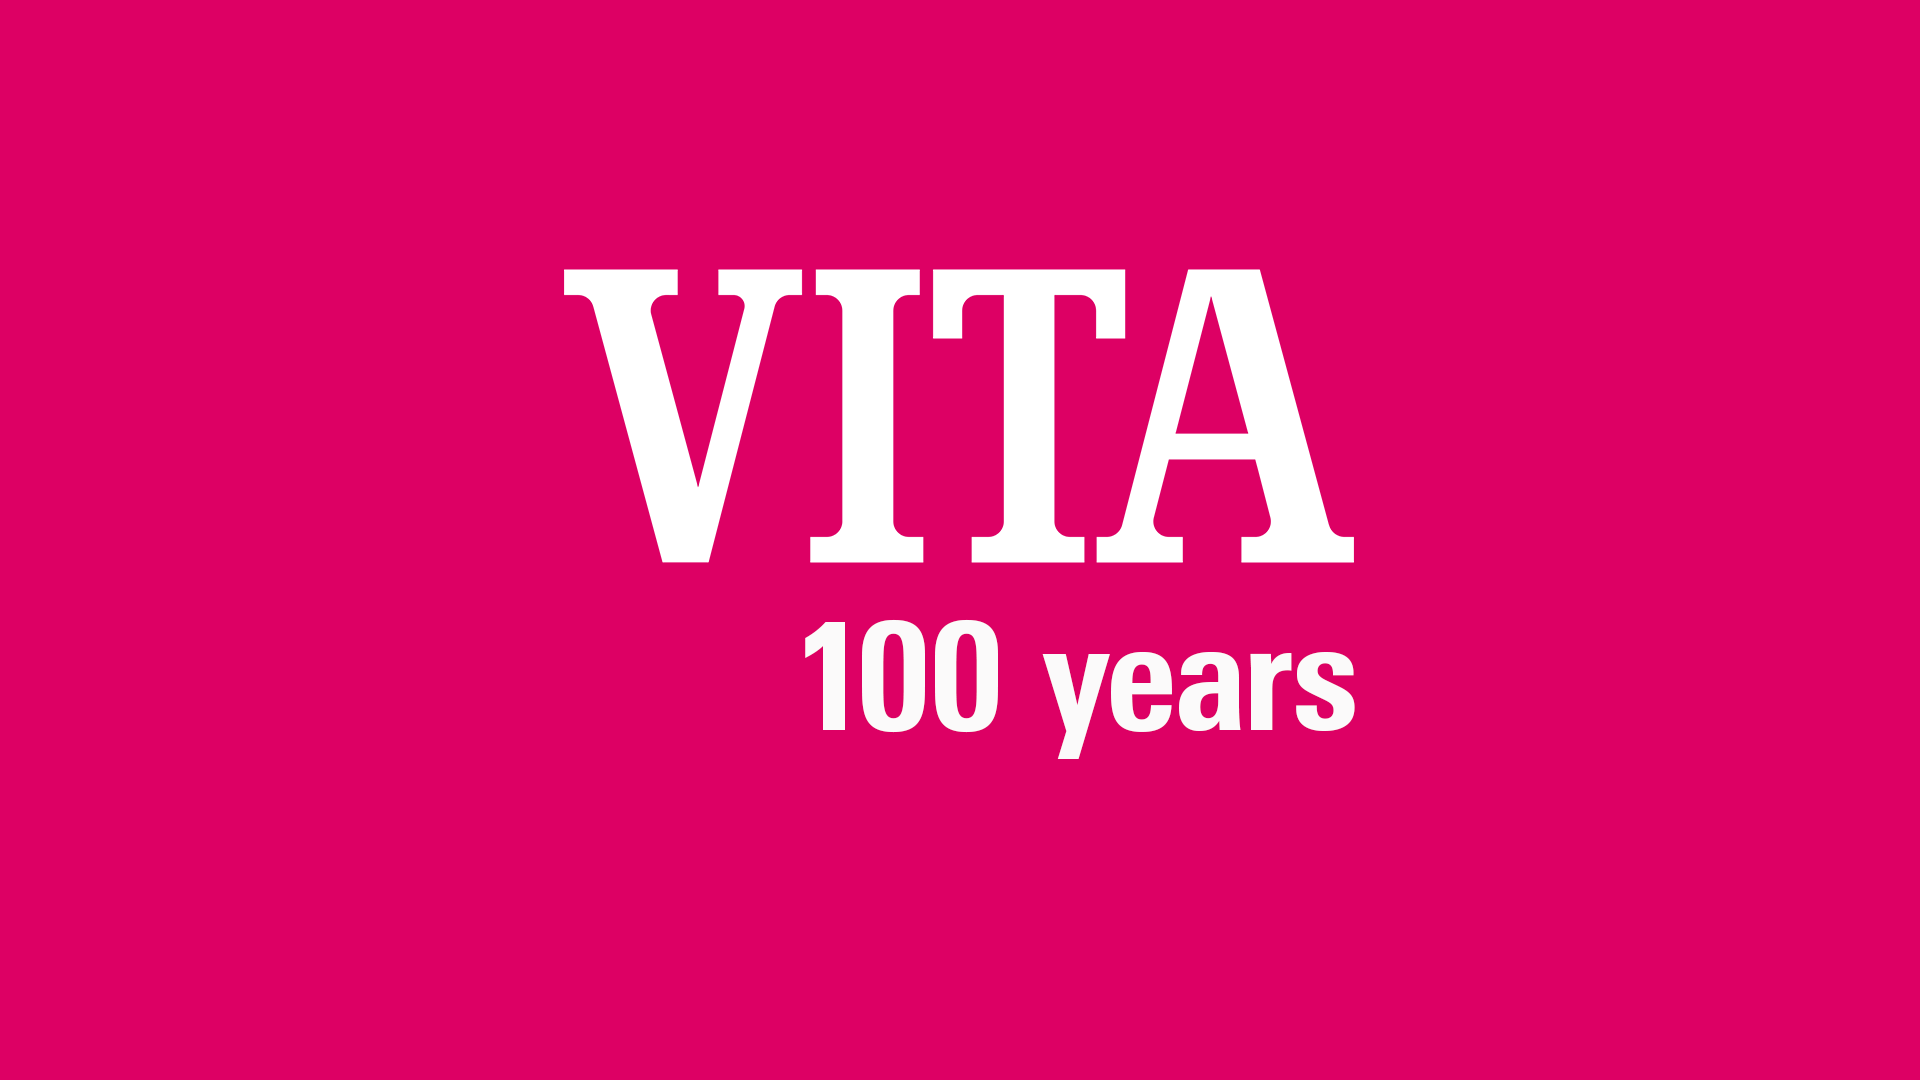 VITA 100 years